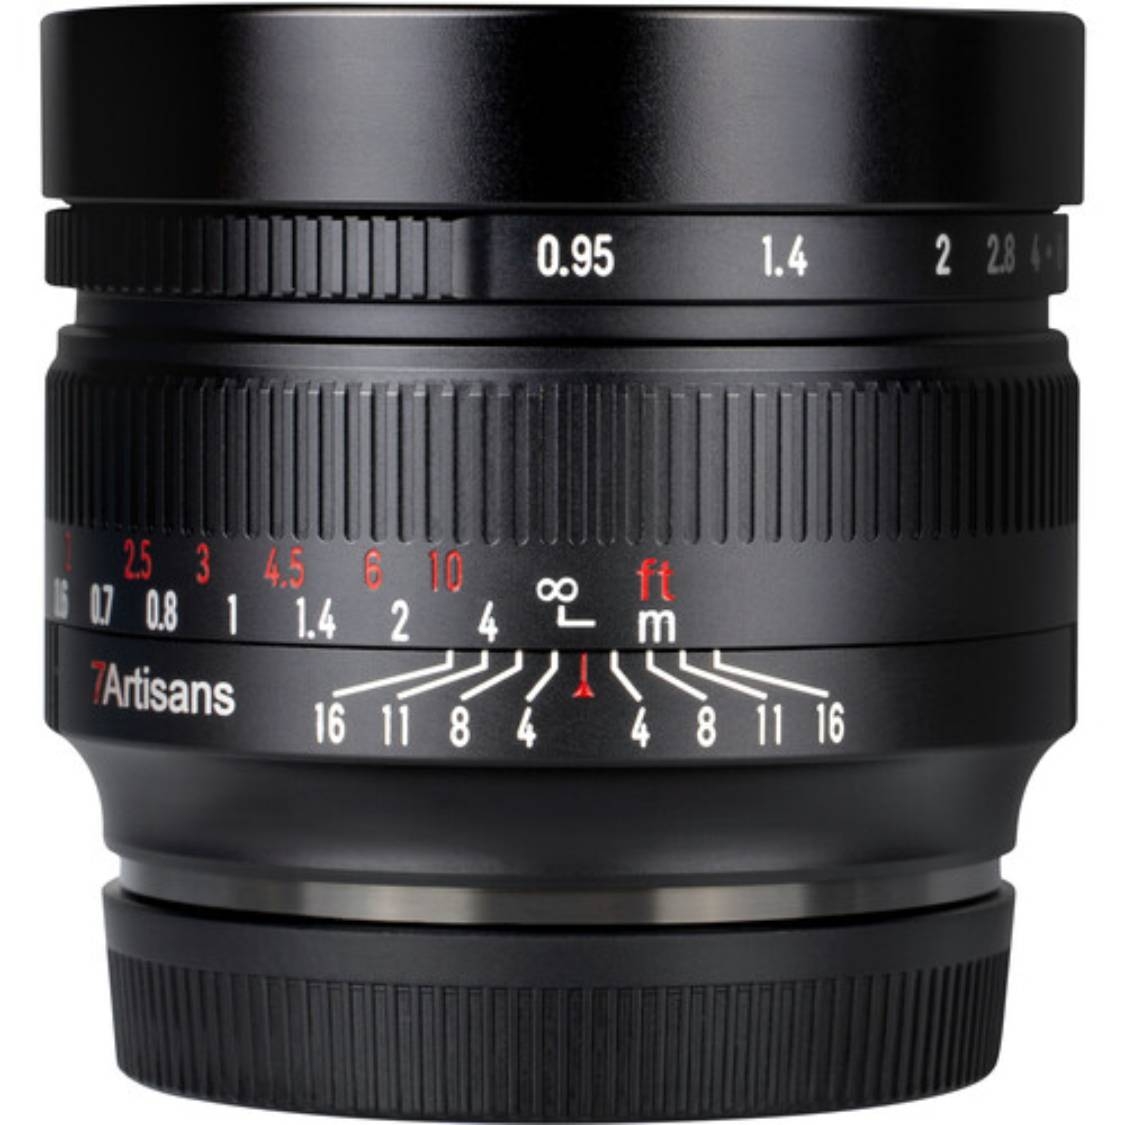 7artisans 50mm f/0.95 Lens for Canon EF-M